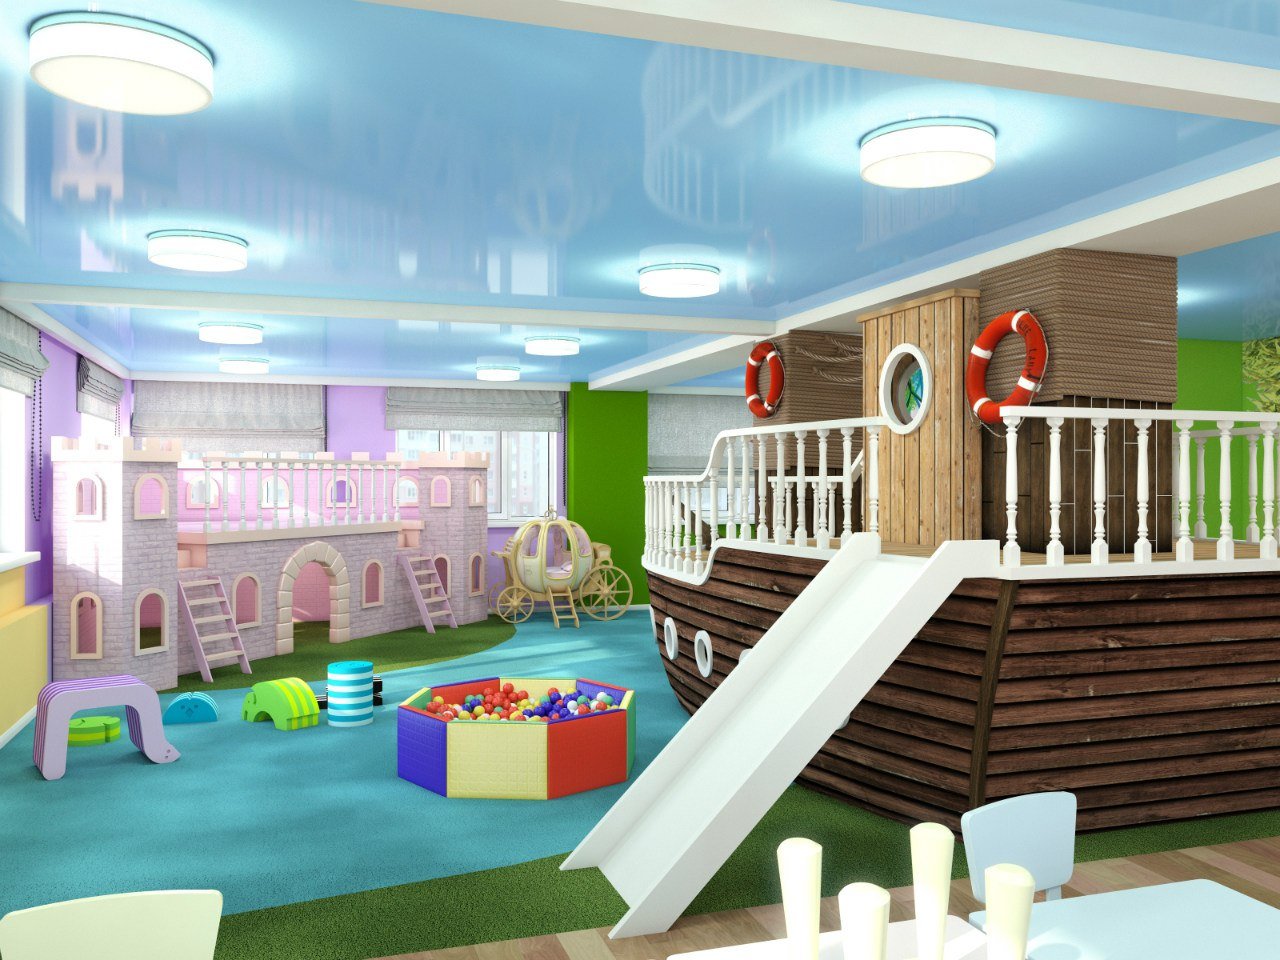 Какие есть детские помещения. Детская игровая комната. Детские игровые комнаты для дня рождения. Комната для детского праздника. Детское кафе.